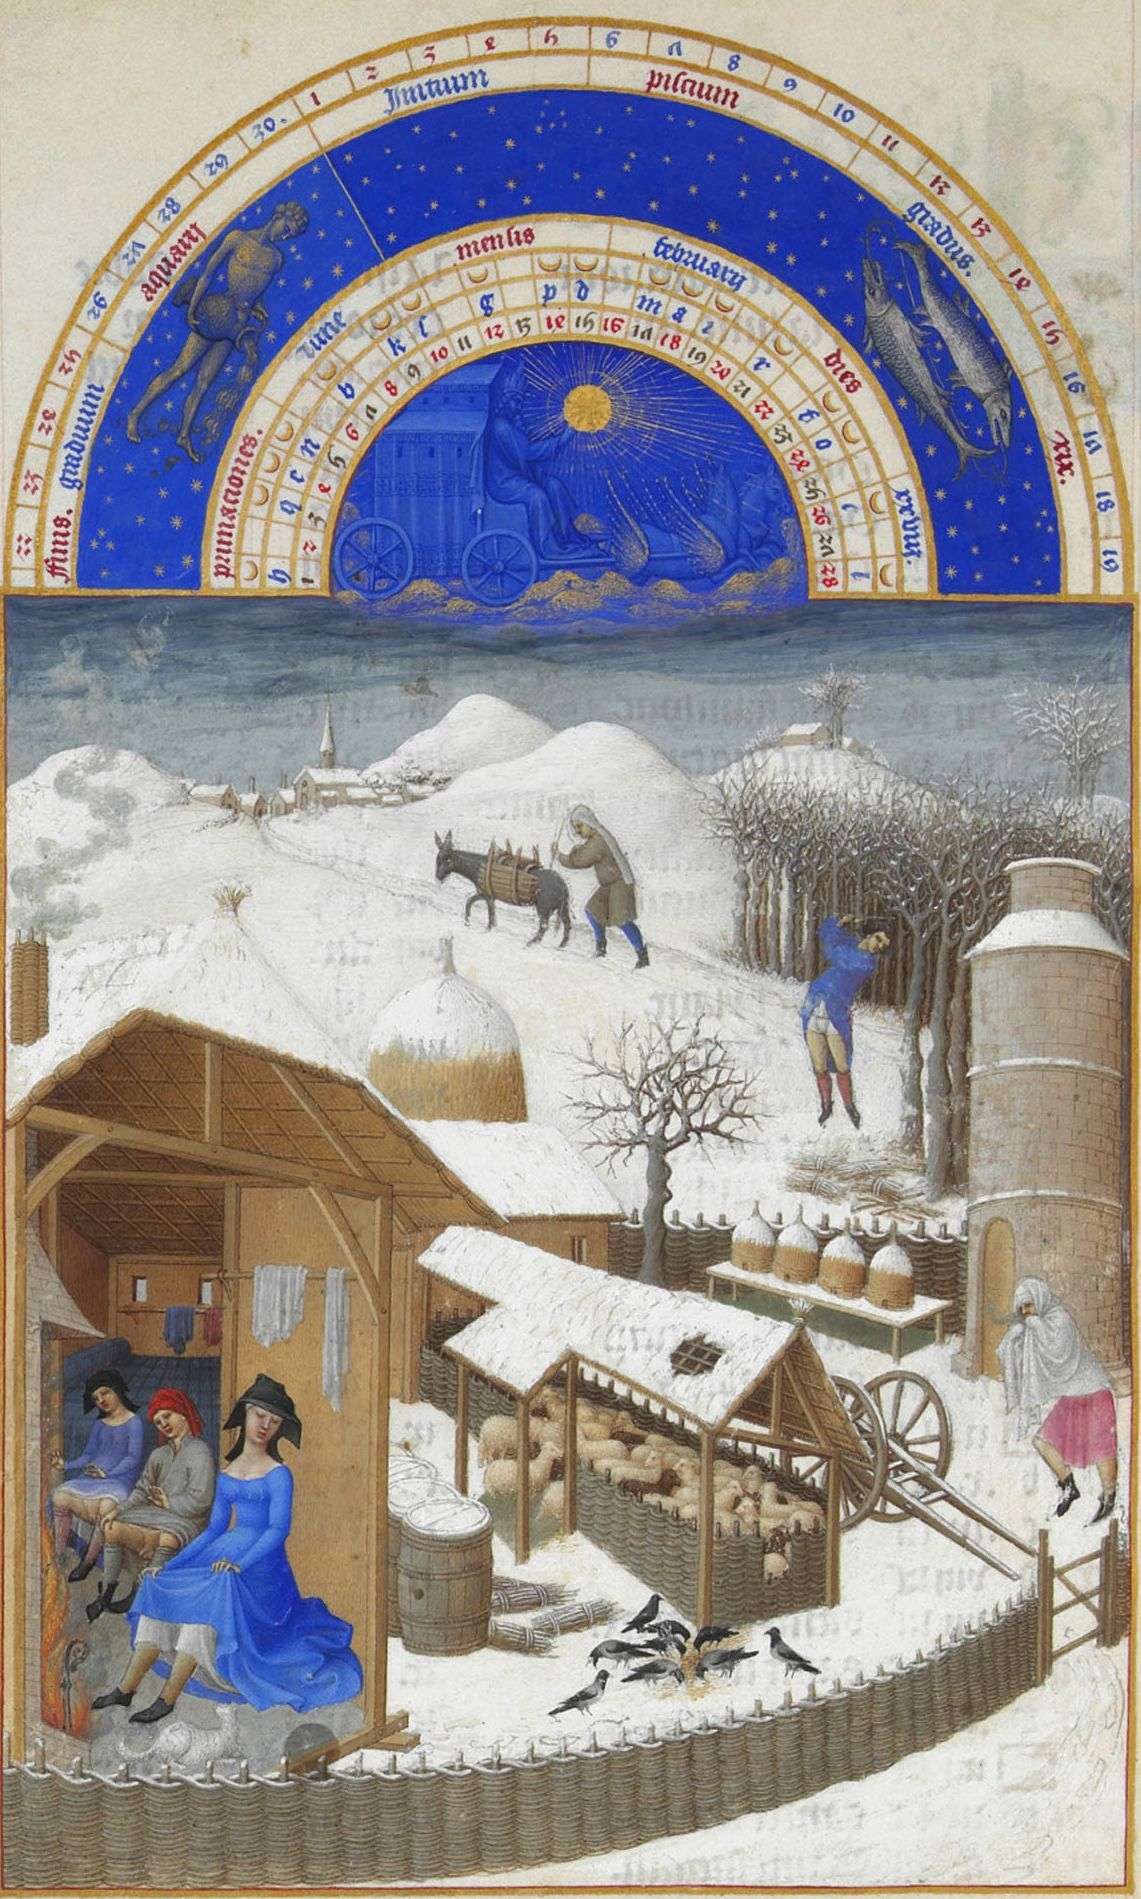 Οι Πολύ Πλούσιες Ώρες του δούκα ντε Μπερρύ : Φεβρουάριος, μικρογραφία, 1411-16, Chantilly, Μουσείο Κοντέ